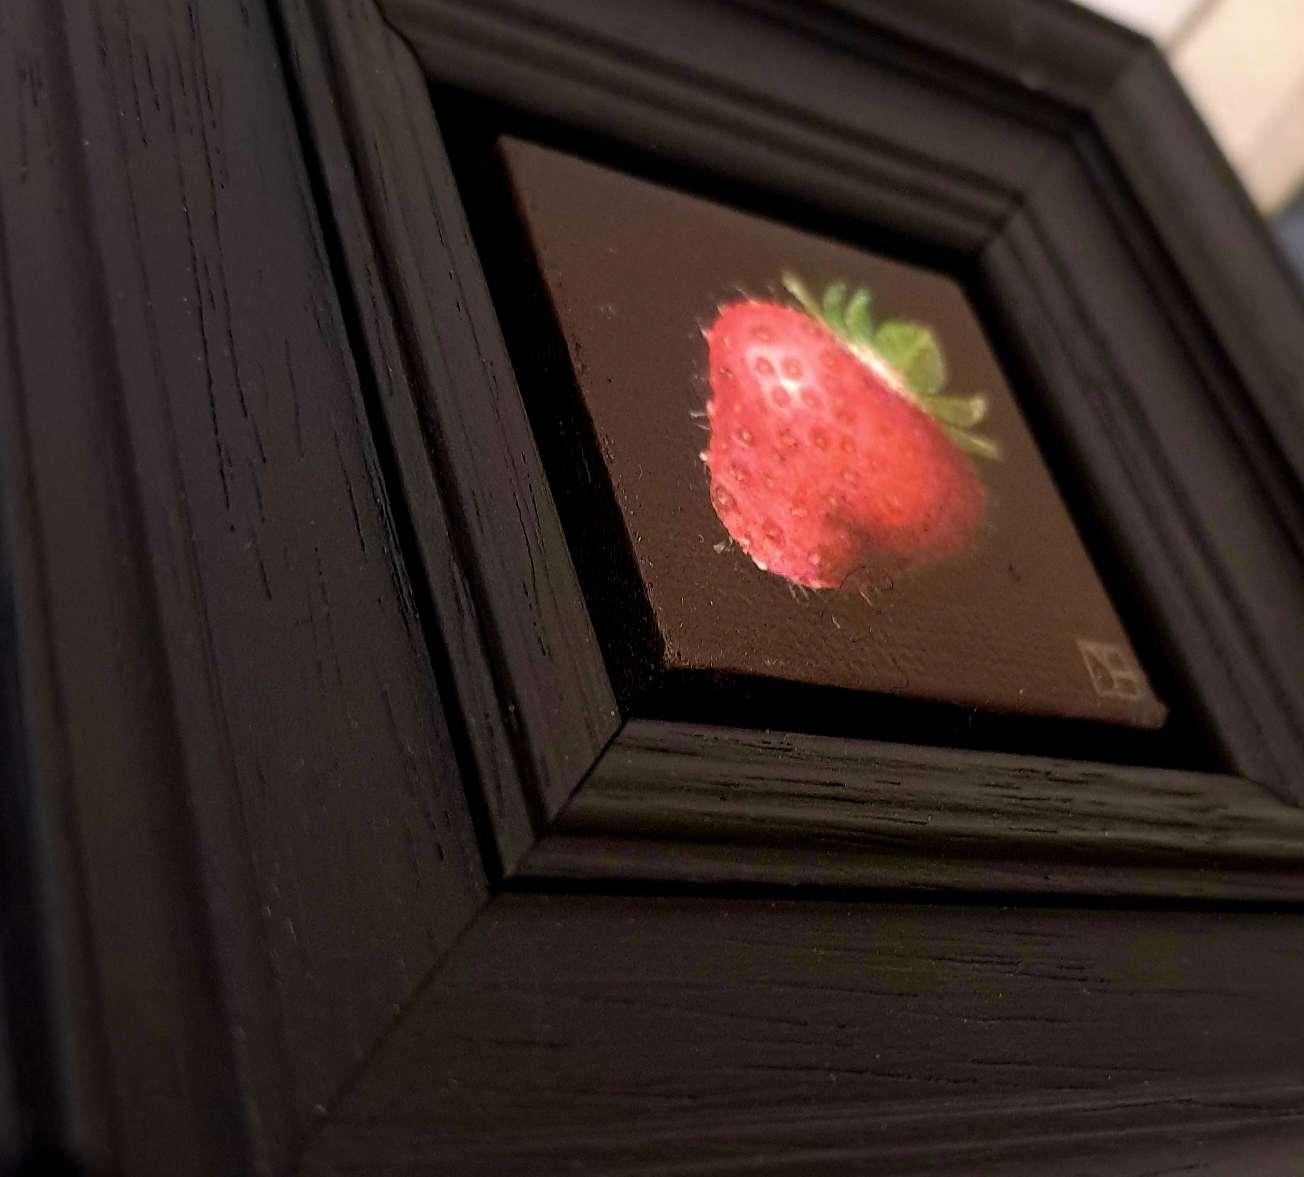 Pocket Very Ripe Strawberry est une peinture à l'huile originale de Dani Humberstone, qui fait partie de sa série Pocket Painting, composée de peintures à l'huile réalistes à petite échelle, avec un clin d'œil aux natures mortes baroques. Les